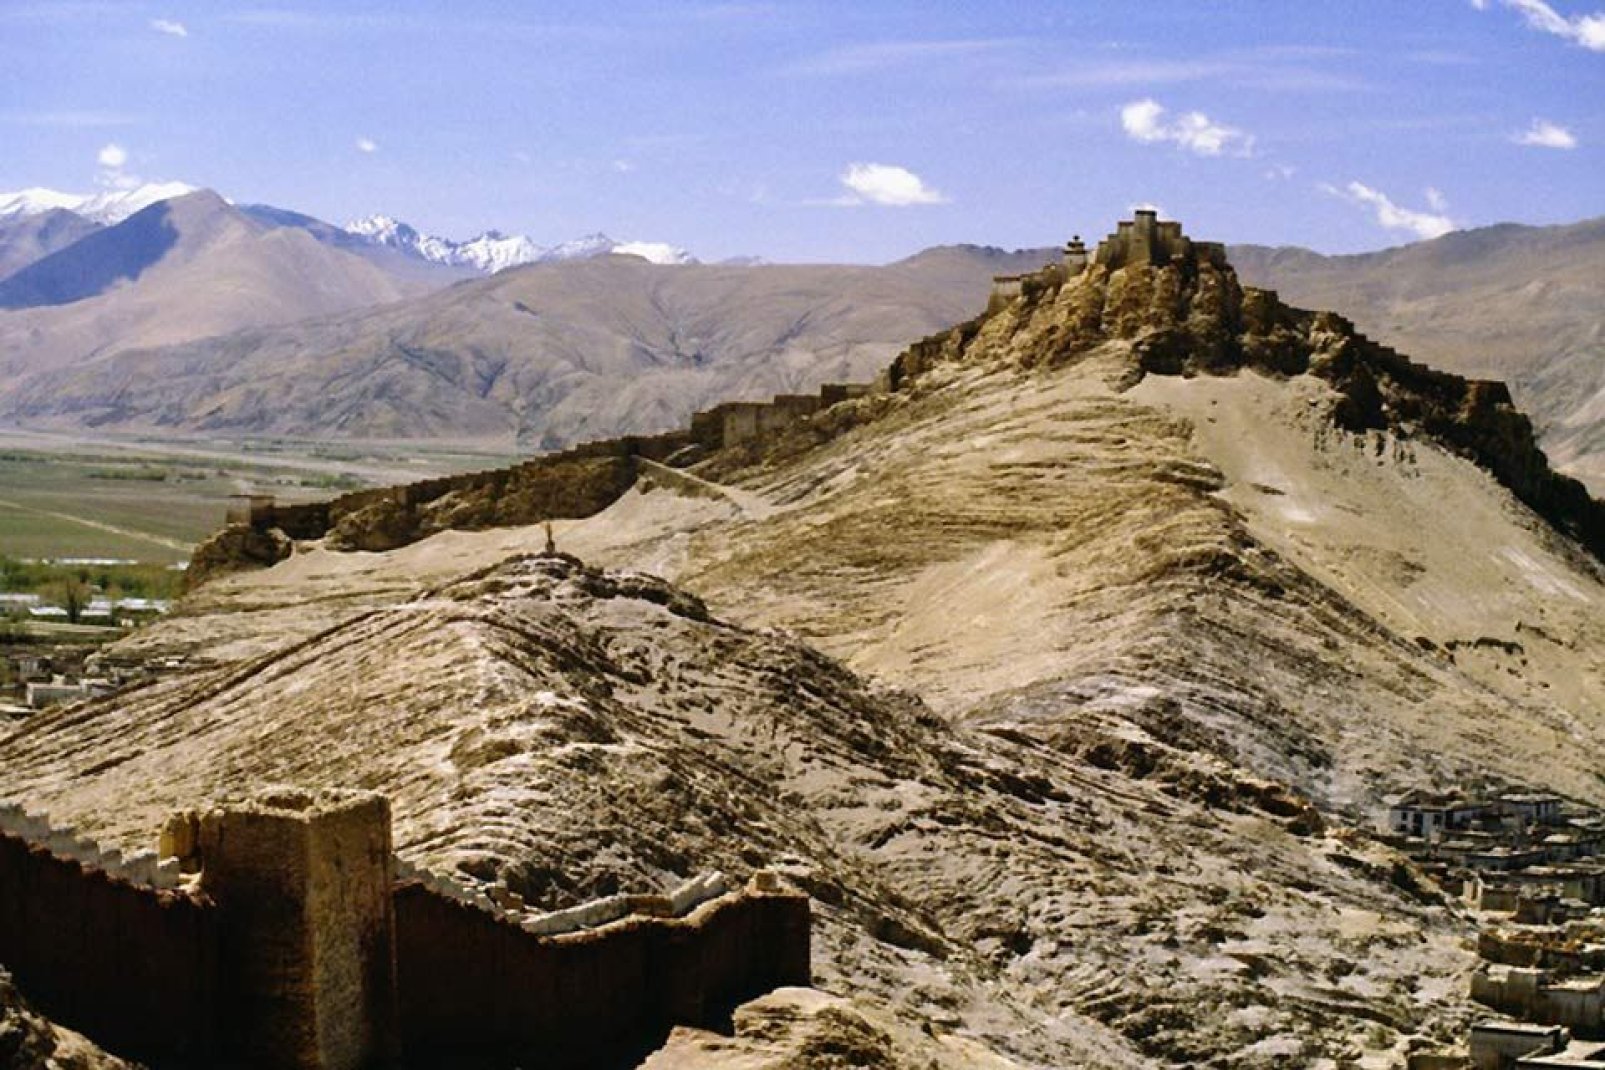 Gyantse, situada a 3977 metros de altitud, está atravesada por la Friendship Highway que la conecta con Katmandú y Lhasa.